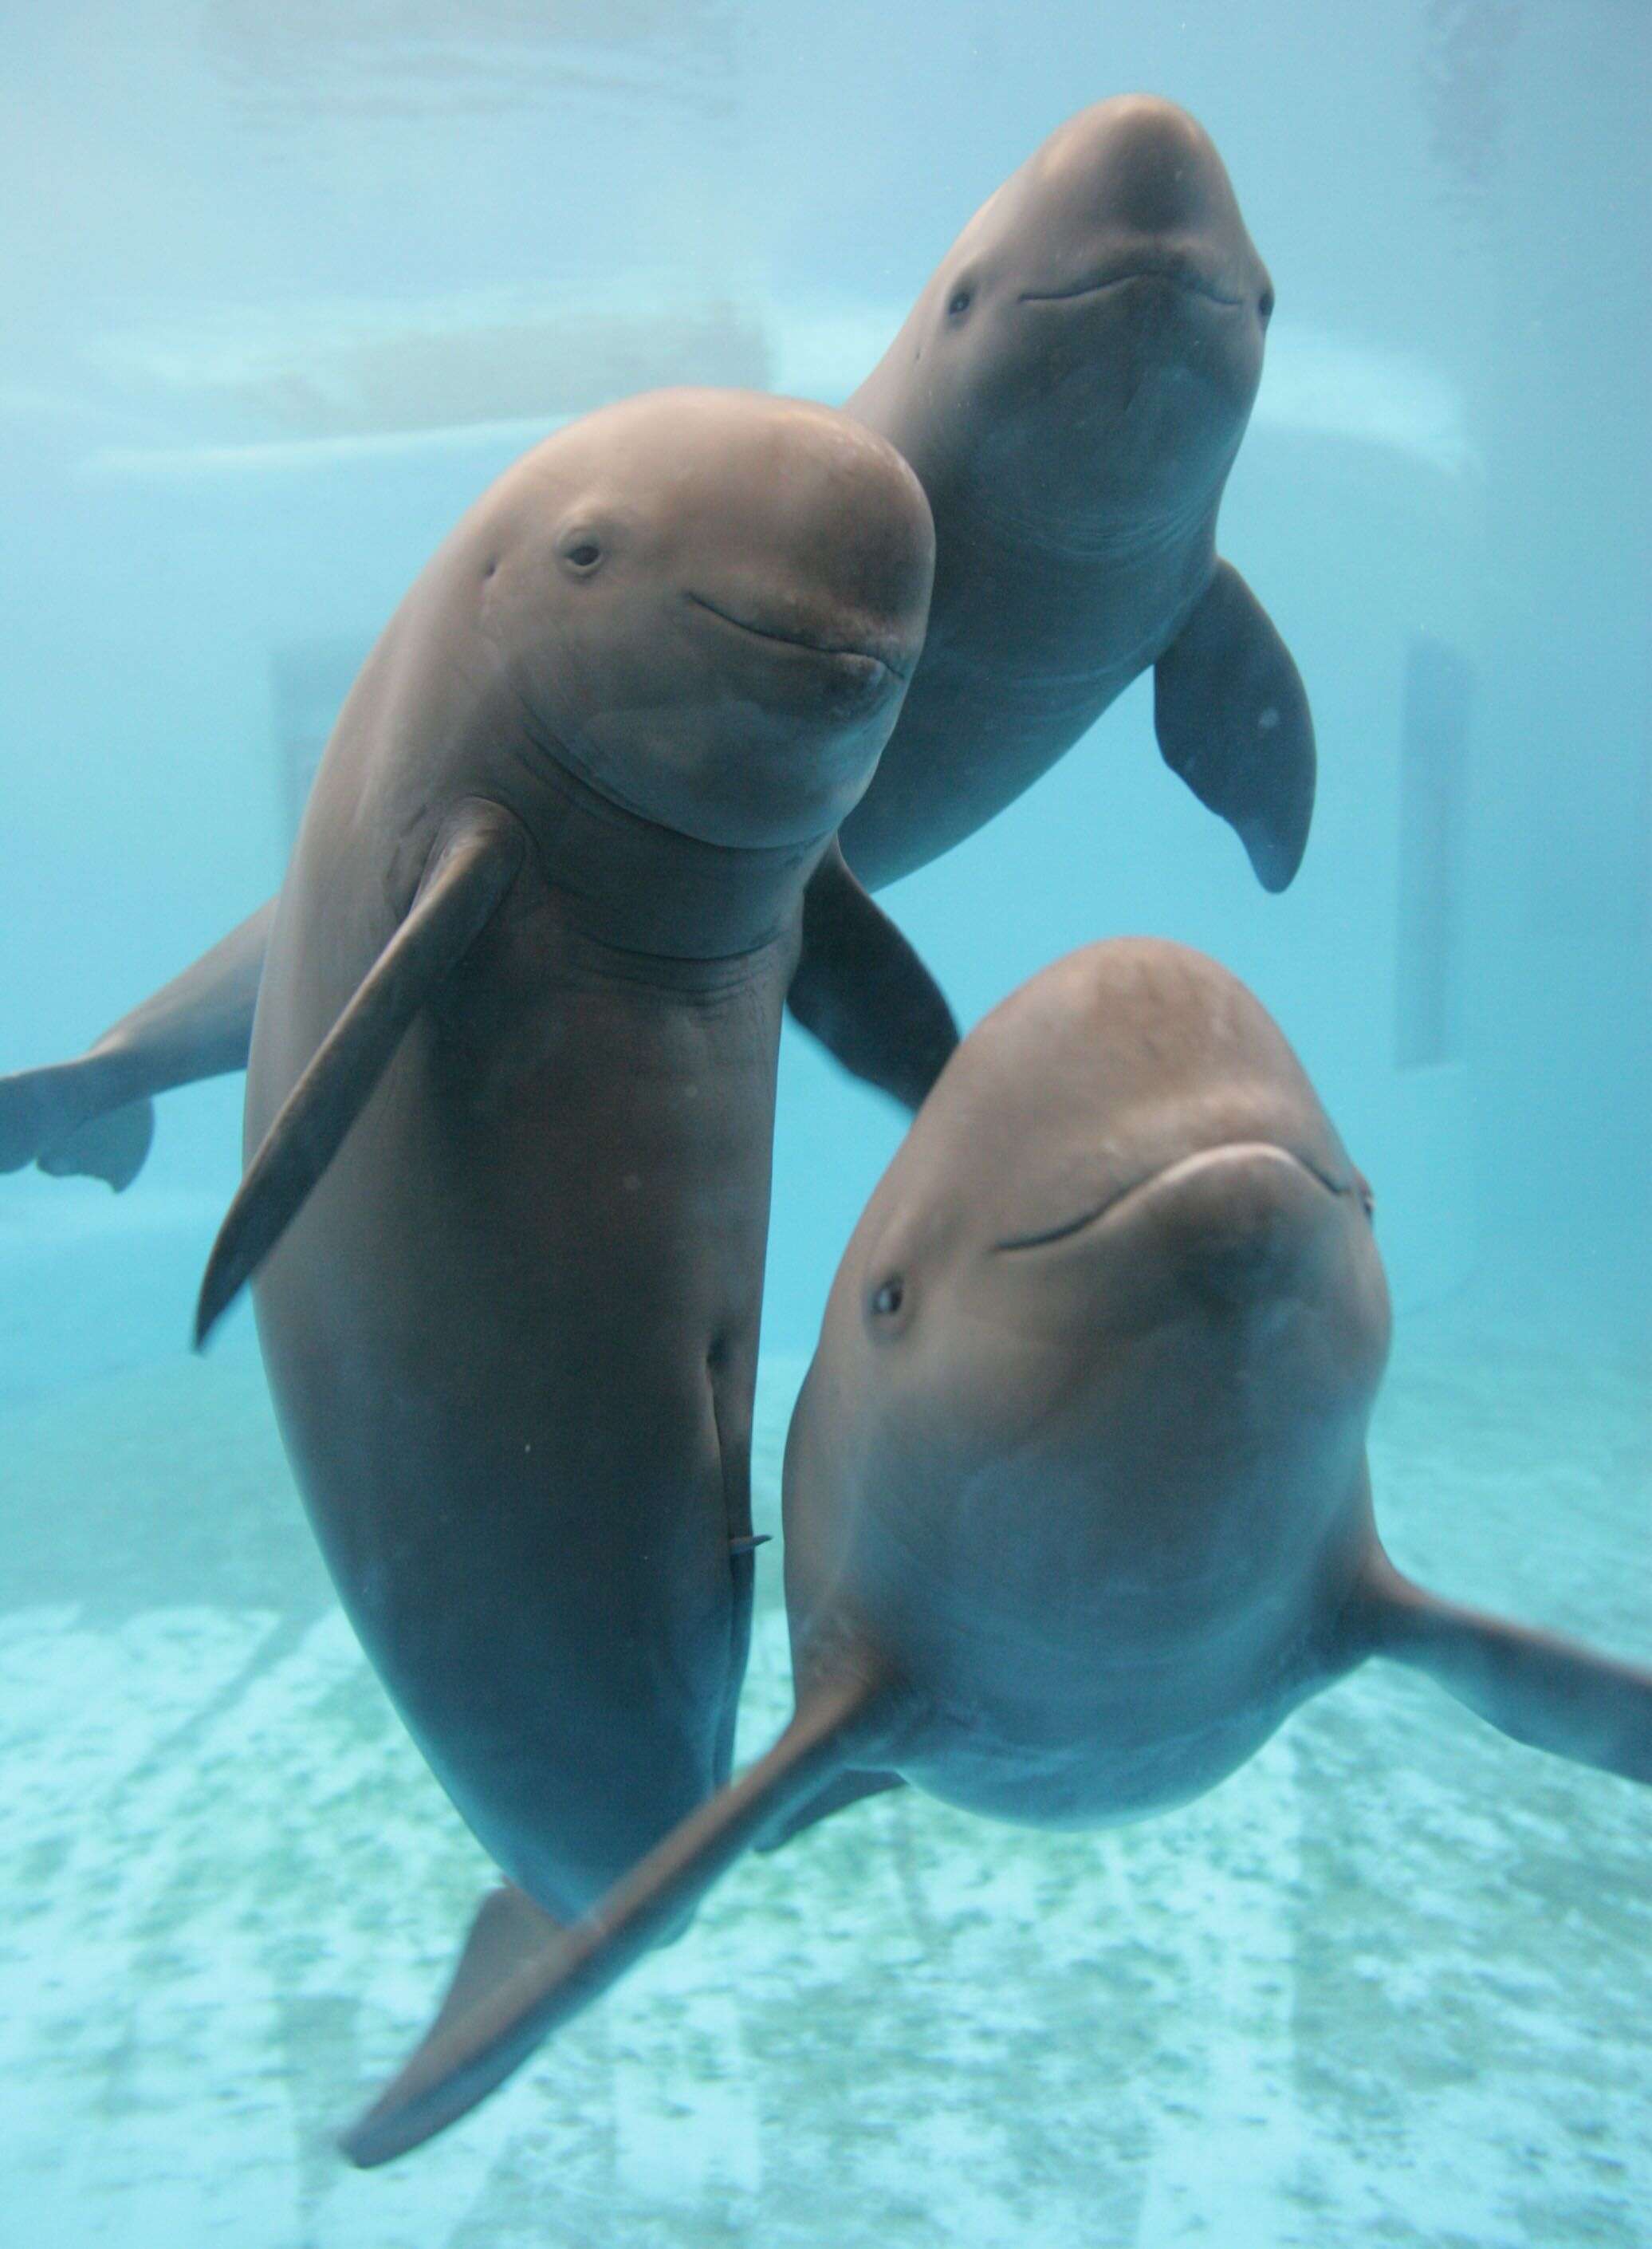 finless porpoise decline endangered